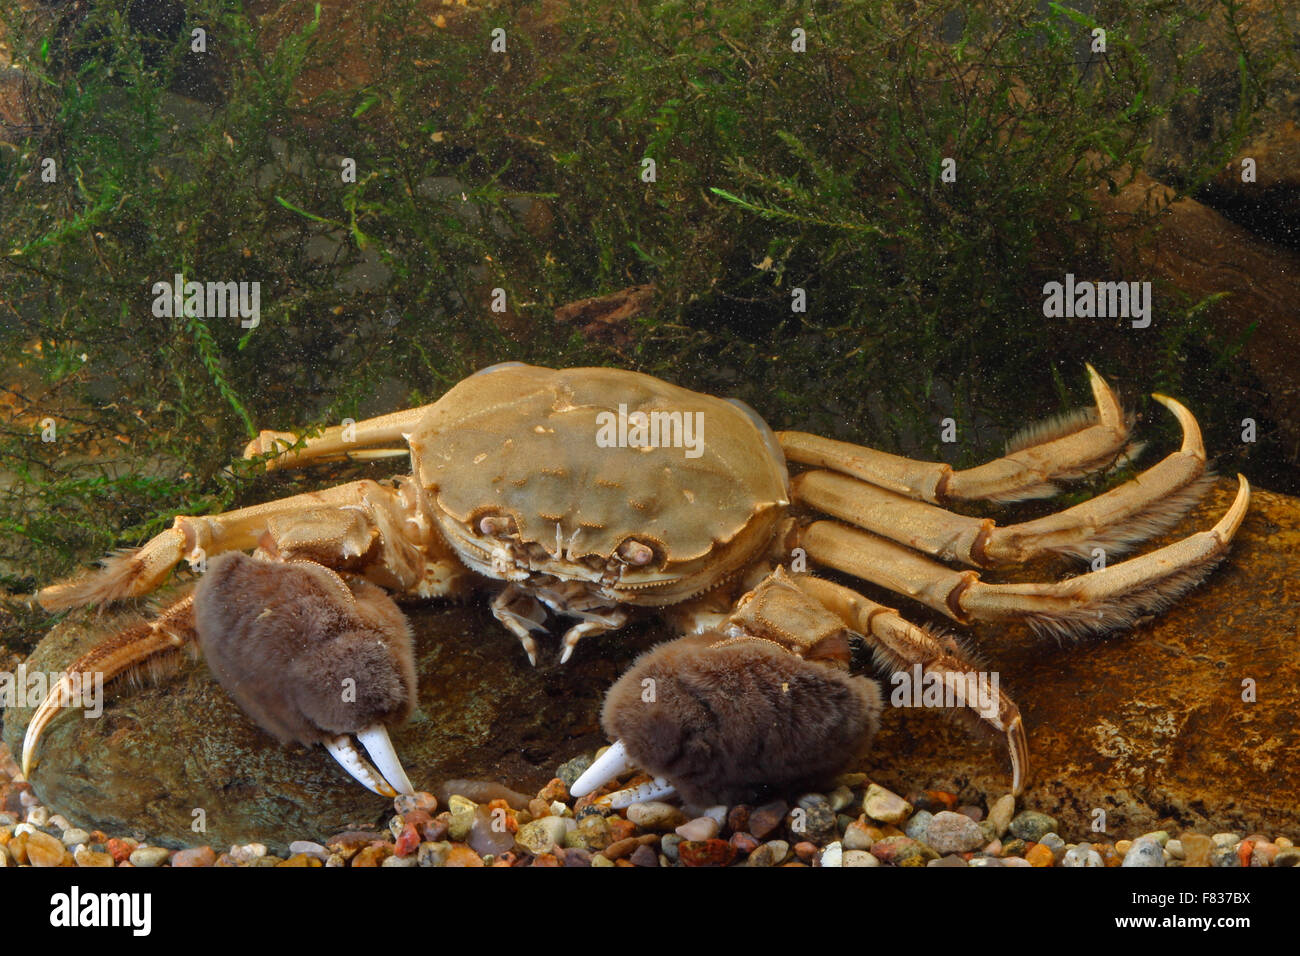 Chinese mitten crab, Shanghai hairy crab, Chinesische Wollhandkrabbe, Wollhand-Krabbe, Eriocheir sinensis, crabe chinois Stock Photo